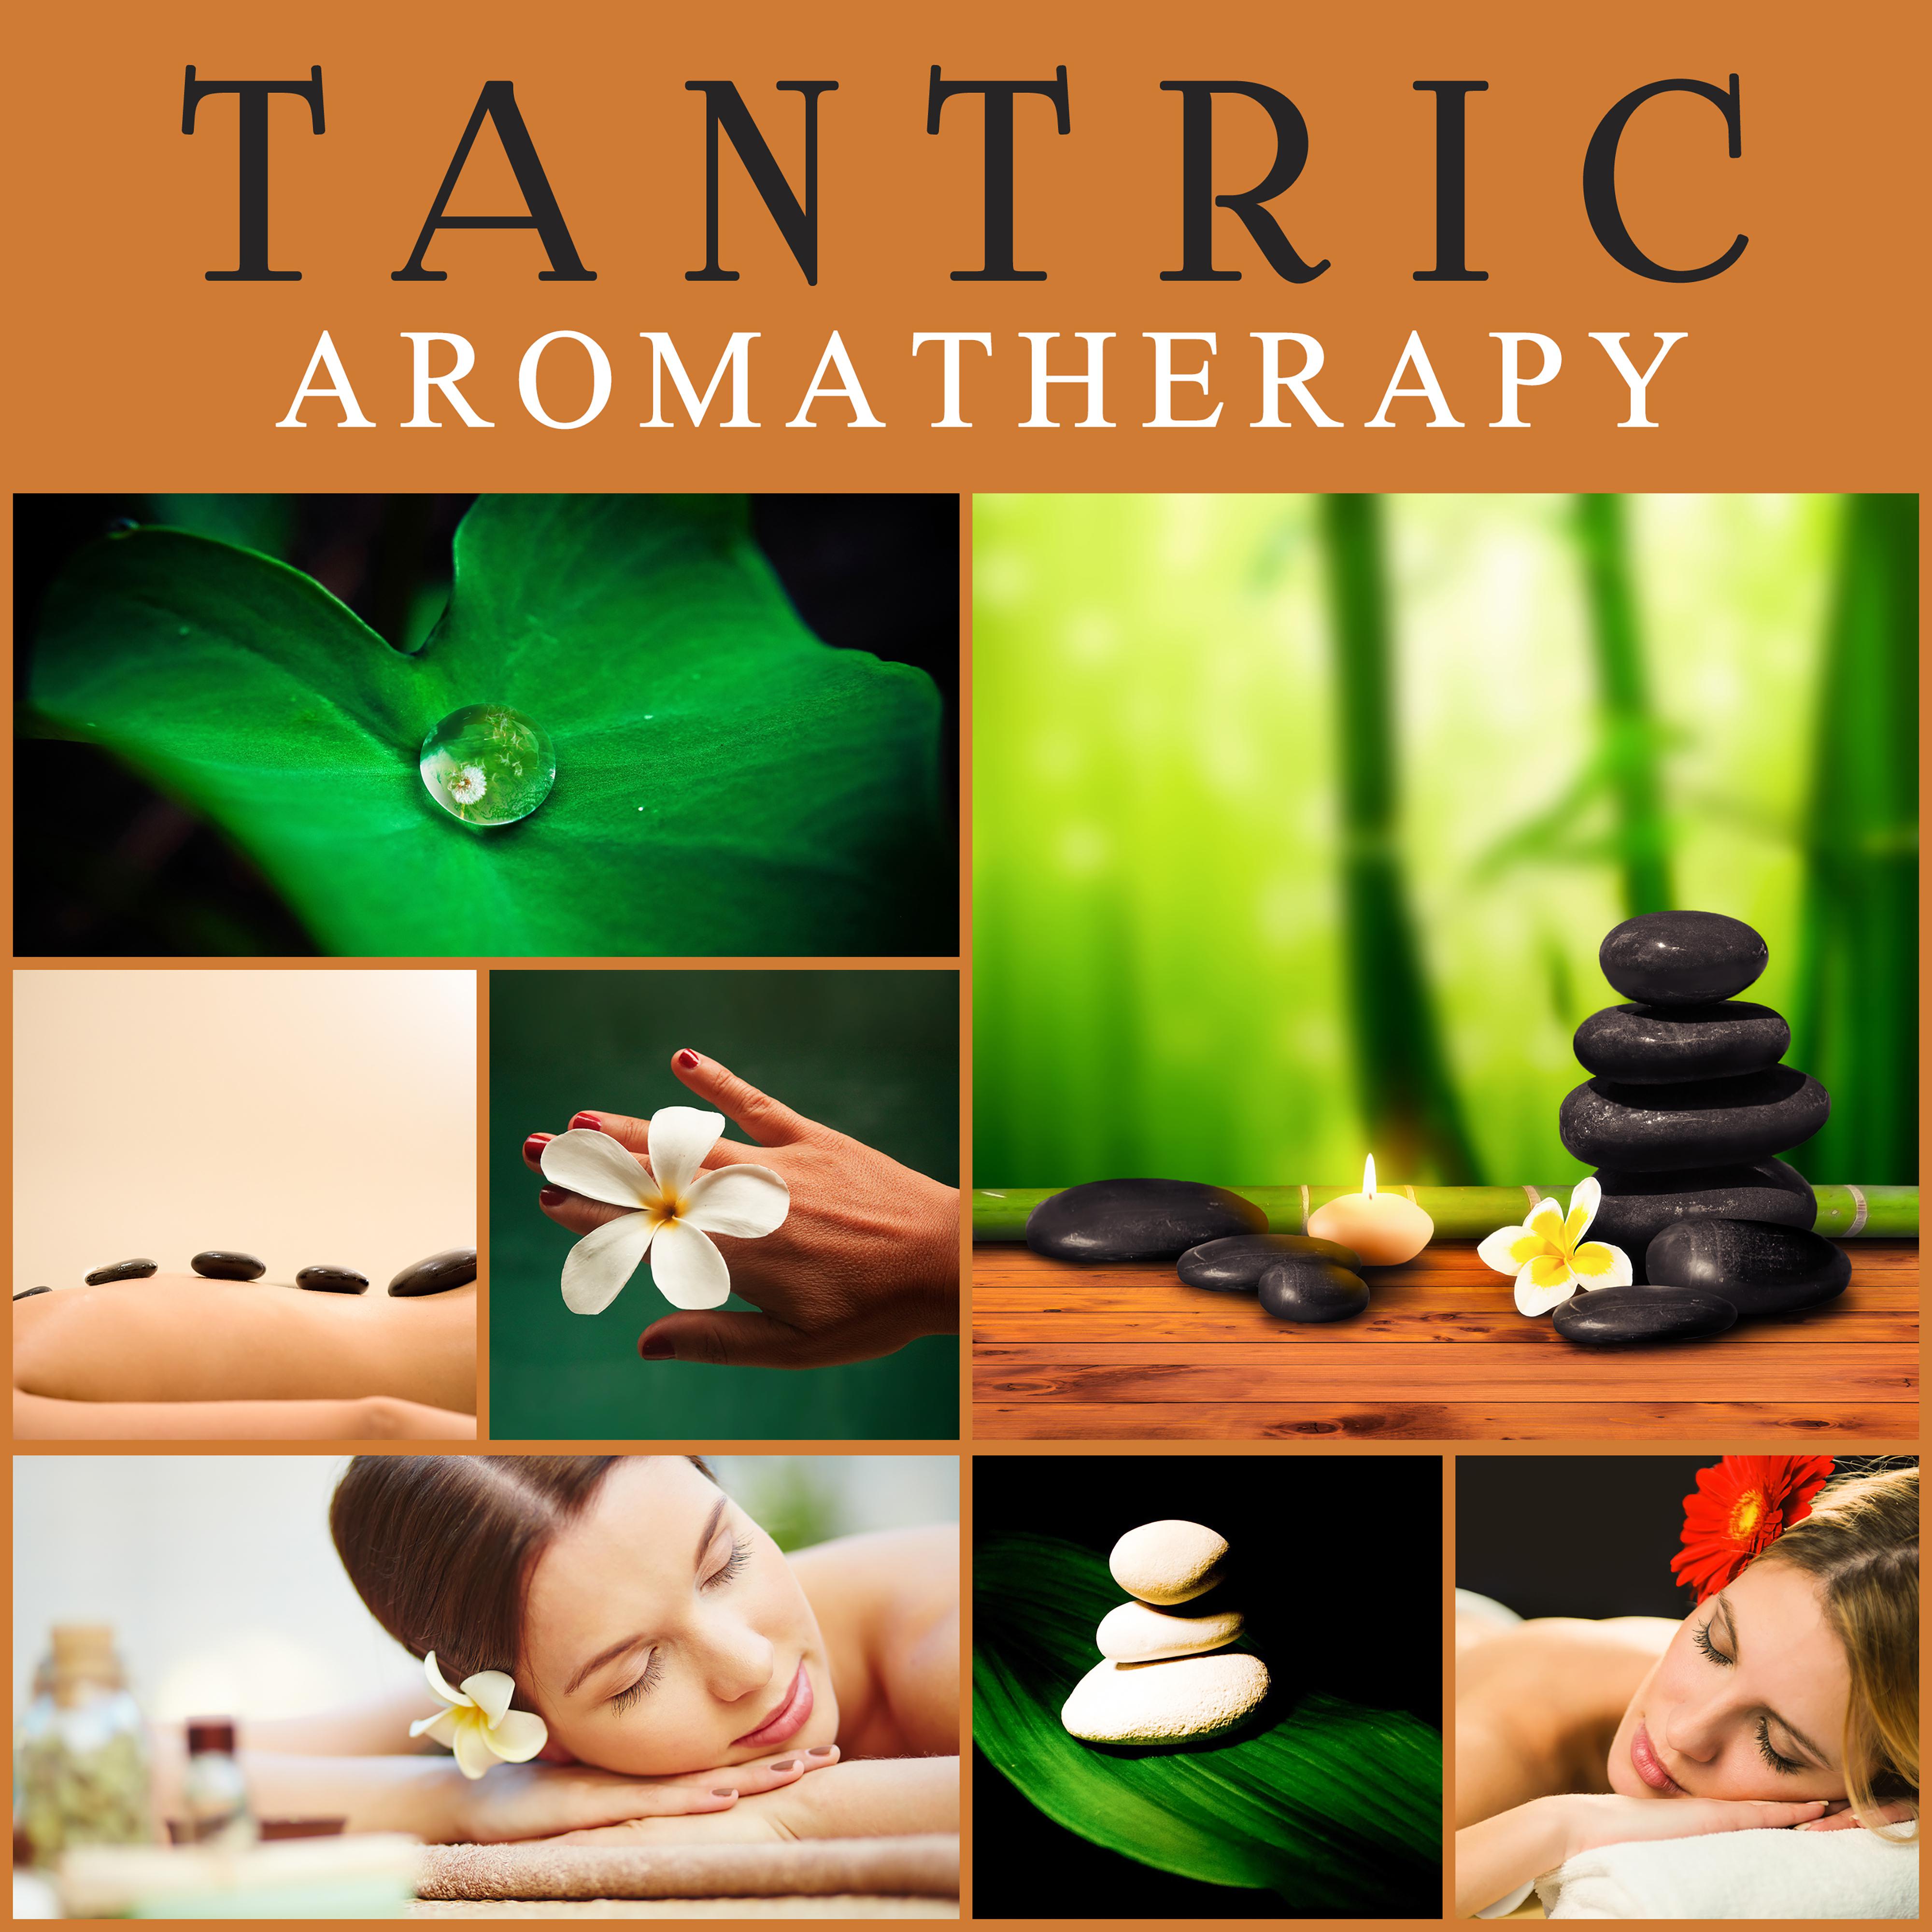 Tantric Aromatherapy  Reiki Music, Sensual Massage, Buddha Lounge, Chillout, Spa Music, Relaxation Wellness